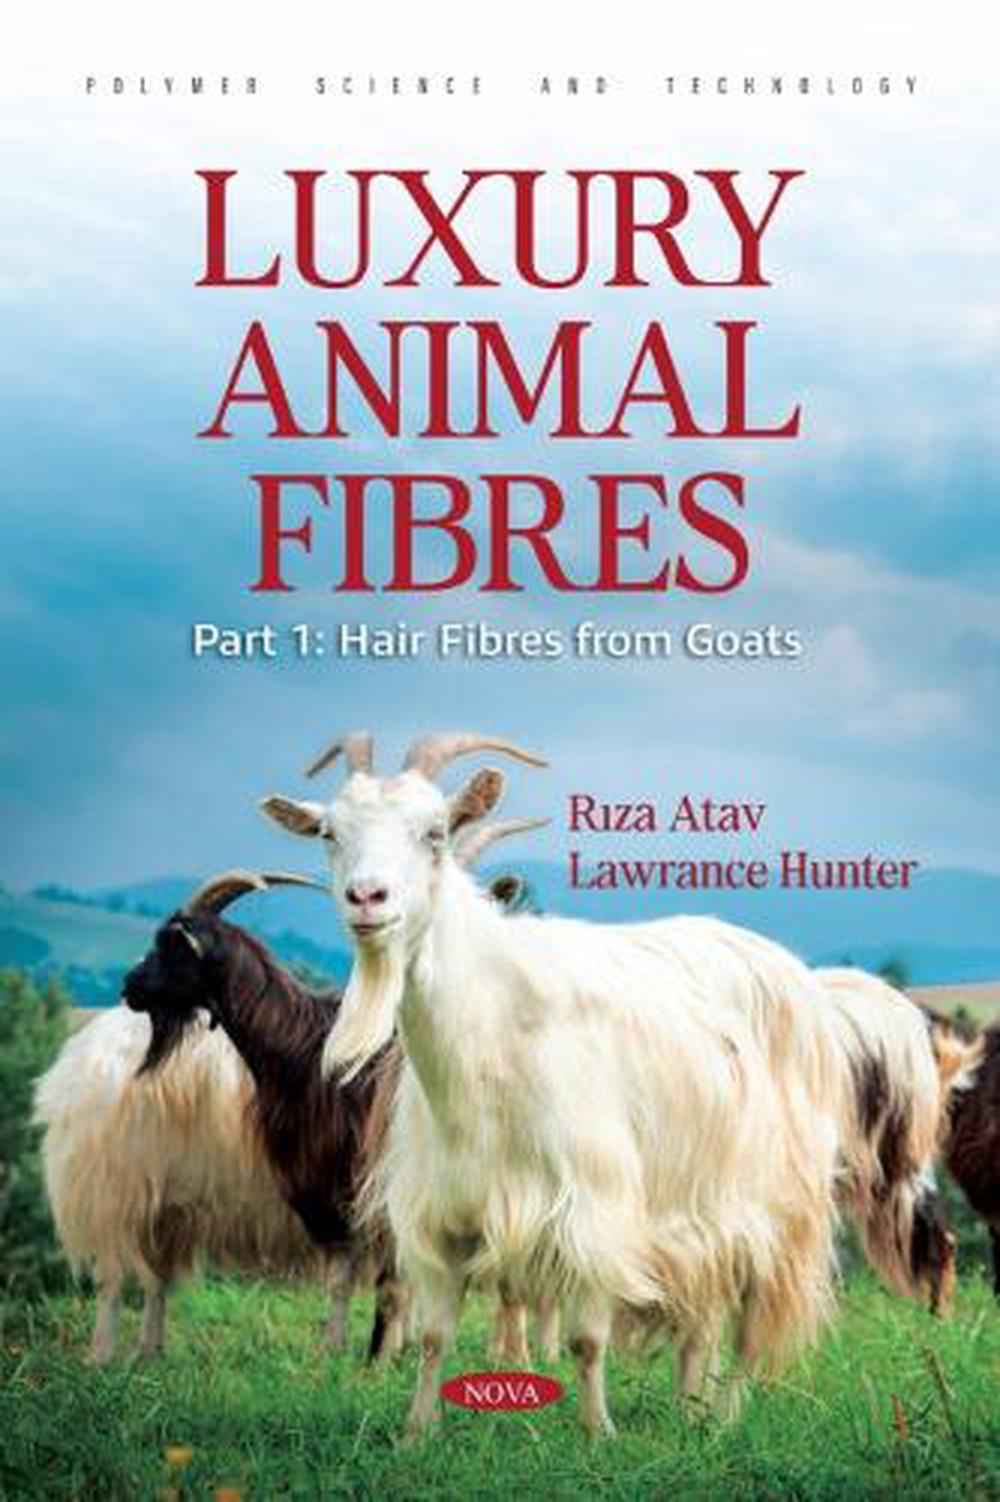 Fibres animales de luxe partie 1 : fibres capillaires de chèvres par Riza Atav livre de poche - Photo 1 sur 1